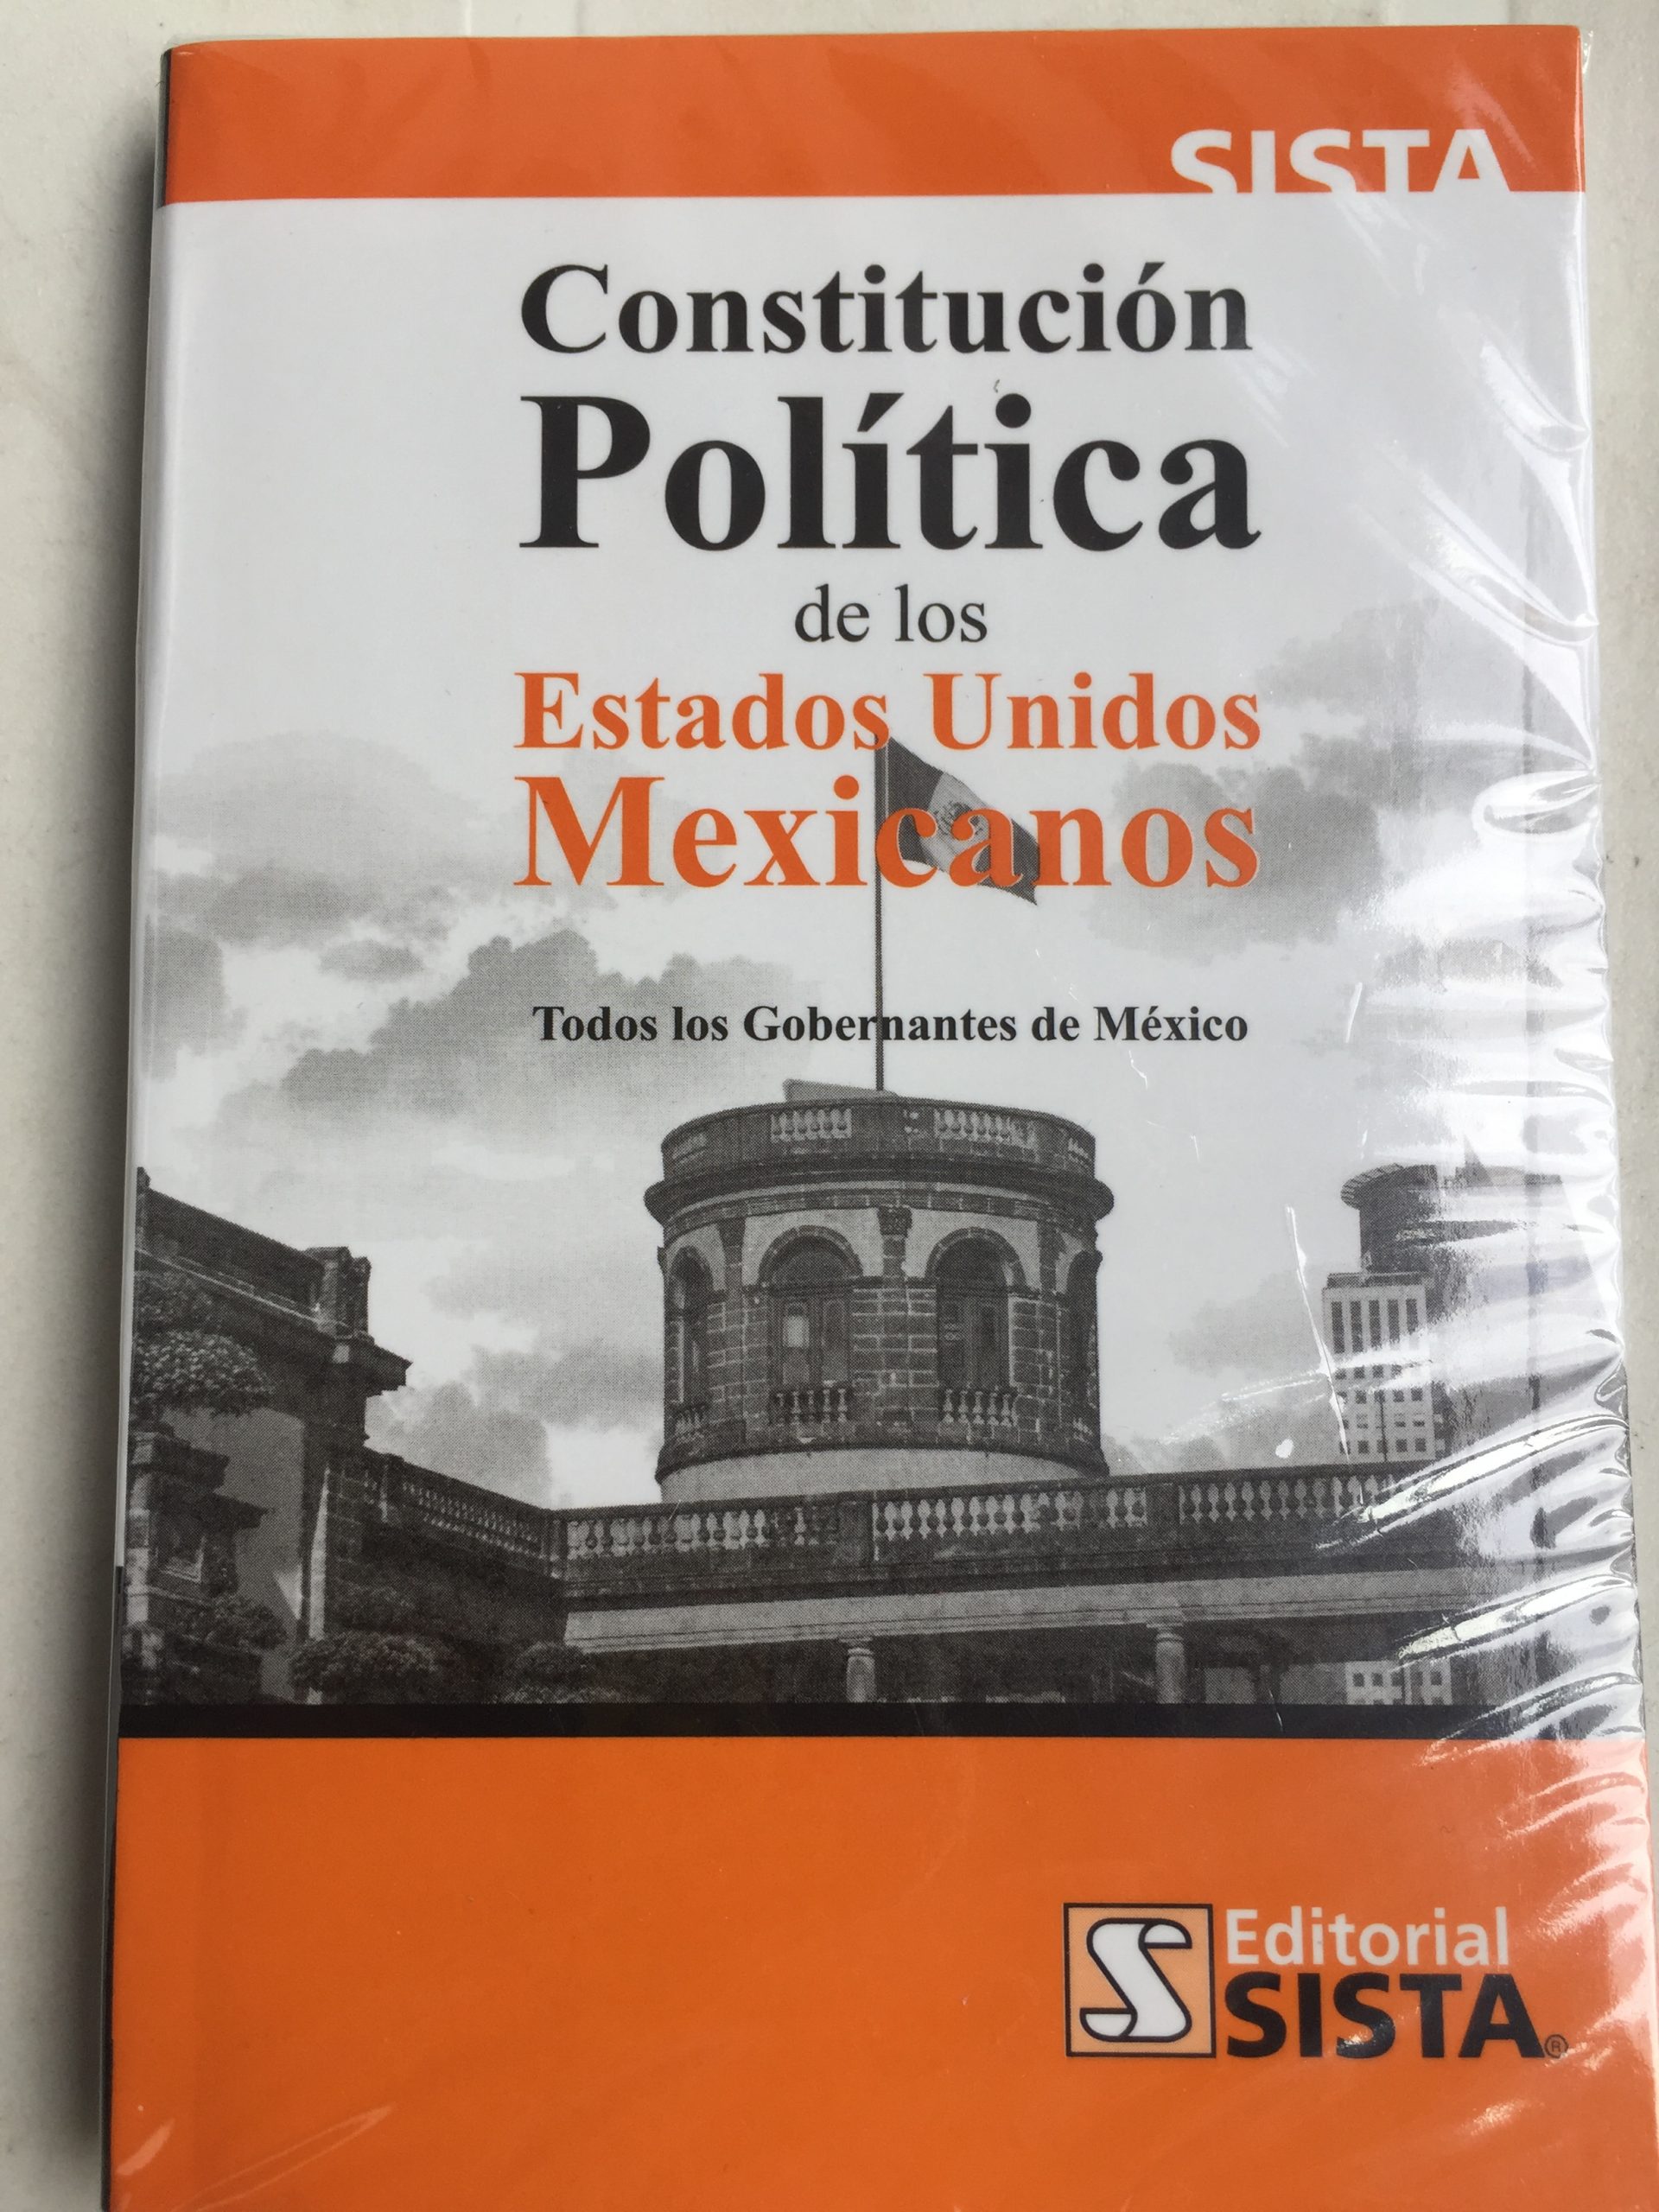 La Carta Magna de los mexicanos